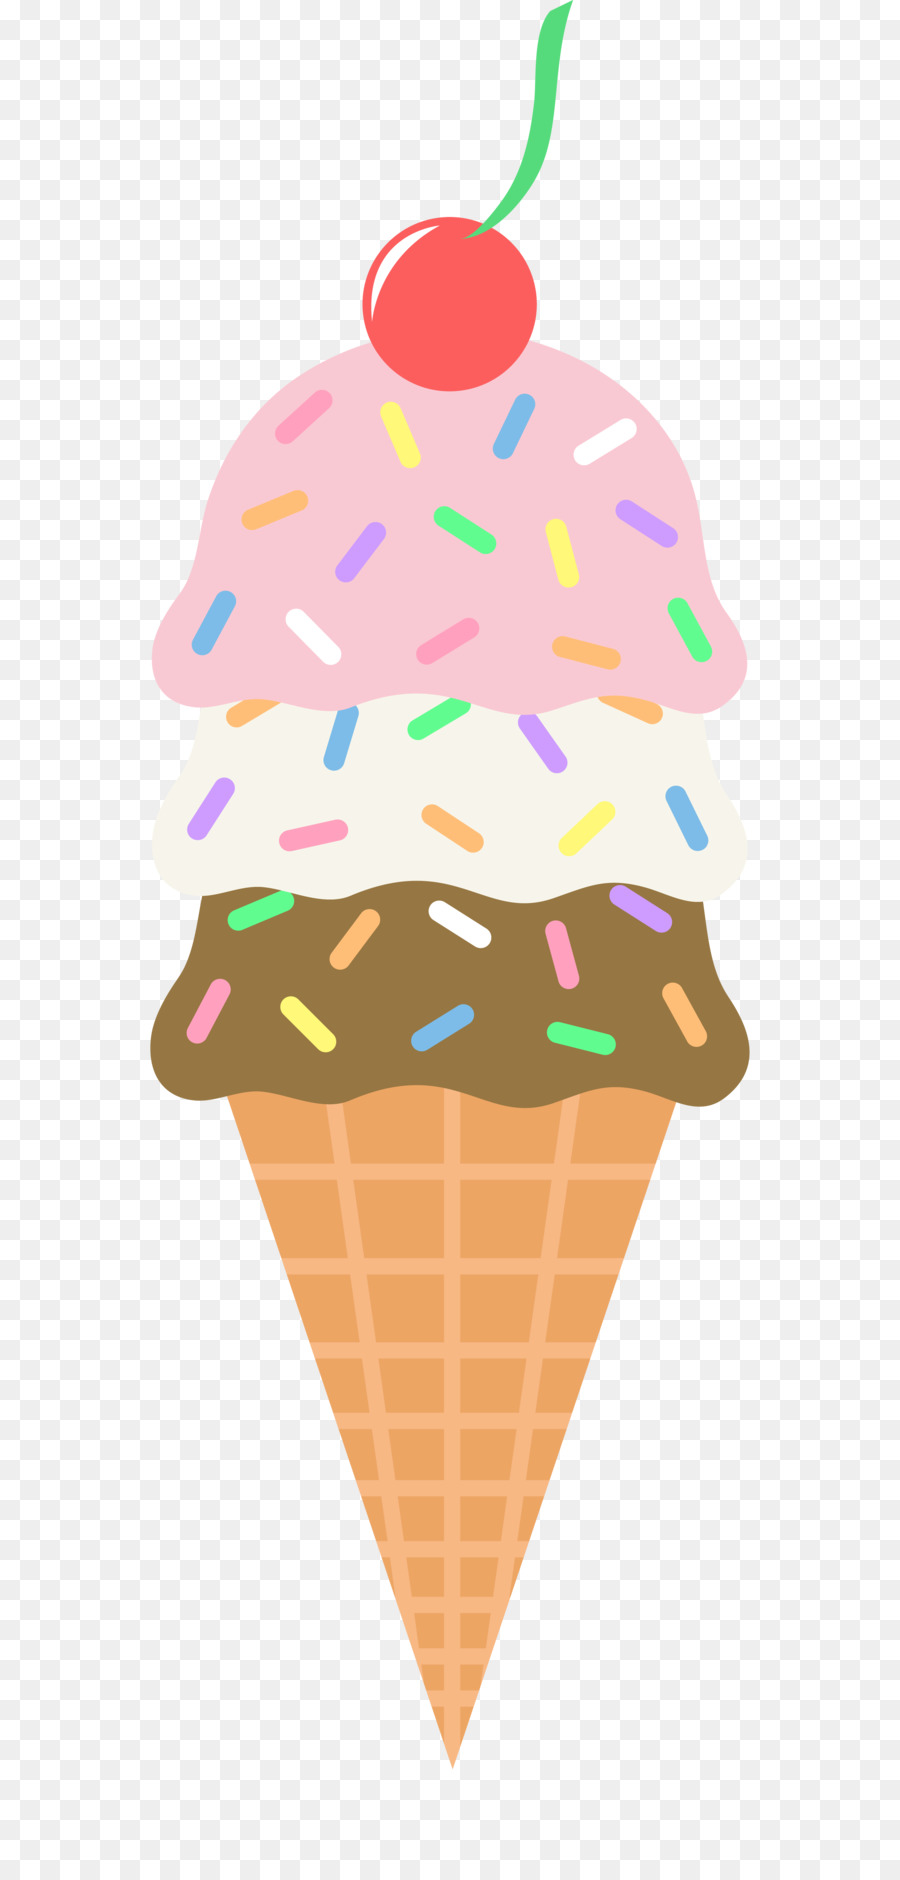 Ice cream cone Sundae Neapolitan ice cream - Icecream Cliparts png download - 2713*5639 - Free Transparent Ice Cream png Download.